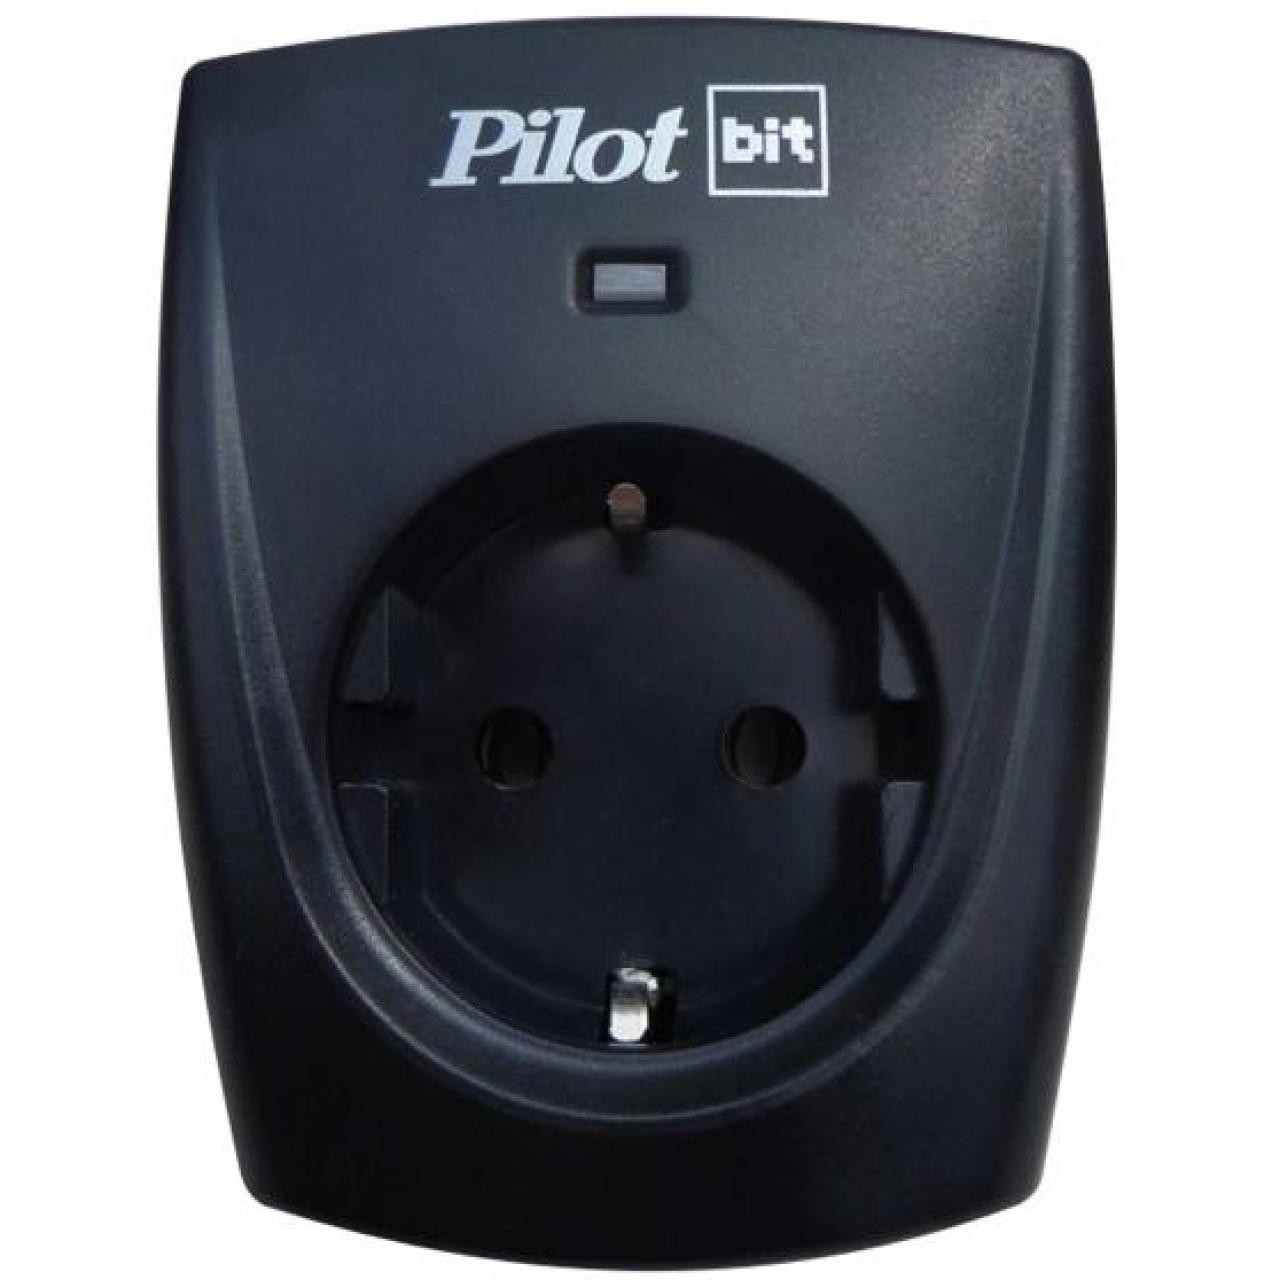 Сетевой фильтр Pilot Bit (1 розетка) черный сетевой фильтр адаптер pilot bit арт 137 1 роз евр черный 16а 1300дж зис